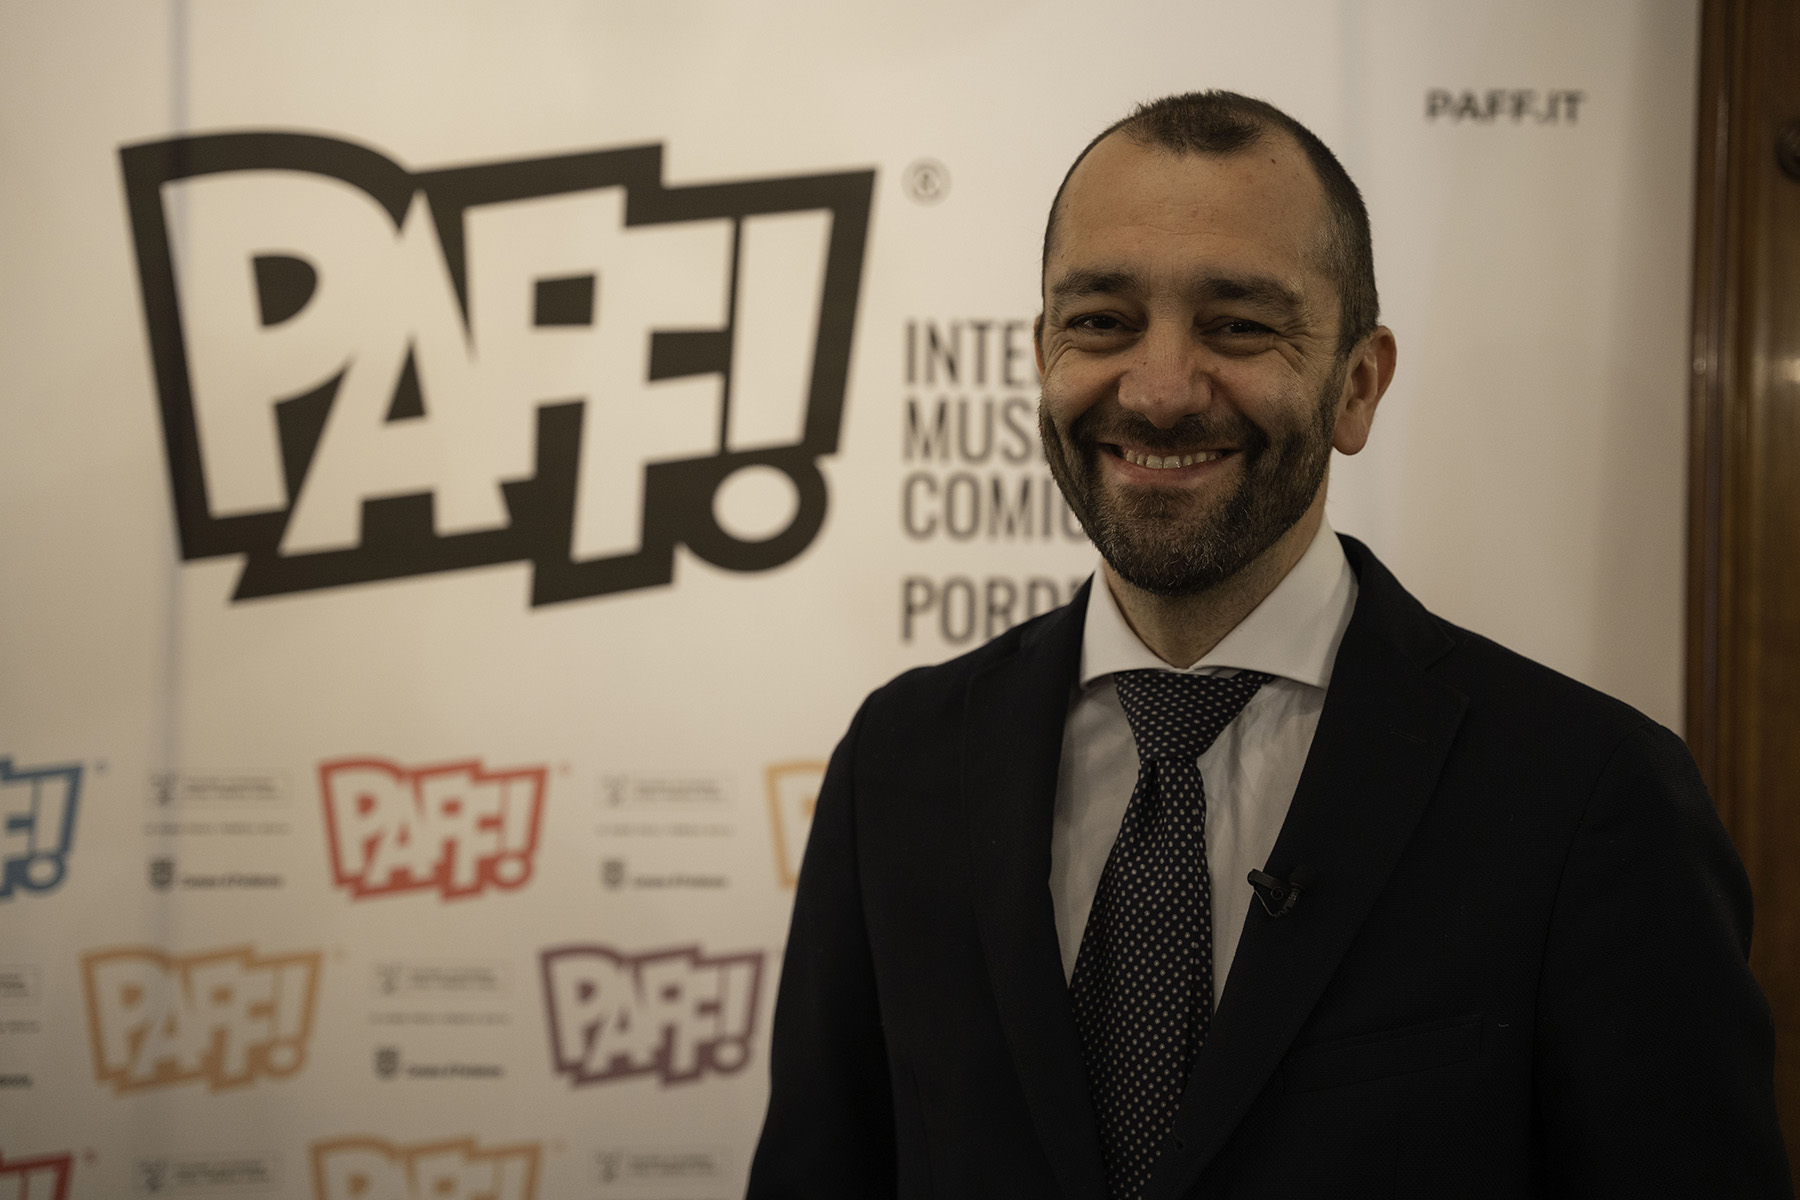 Giulio De Vita, direttore artistico del PAFF! International Museum of Comic Art